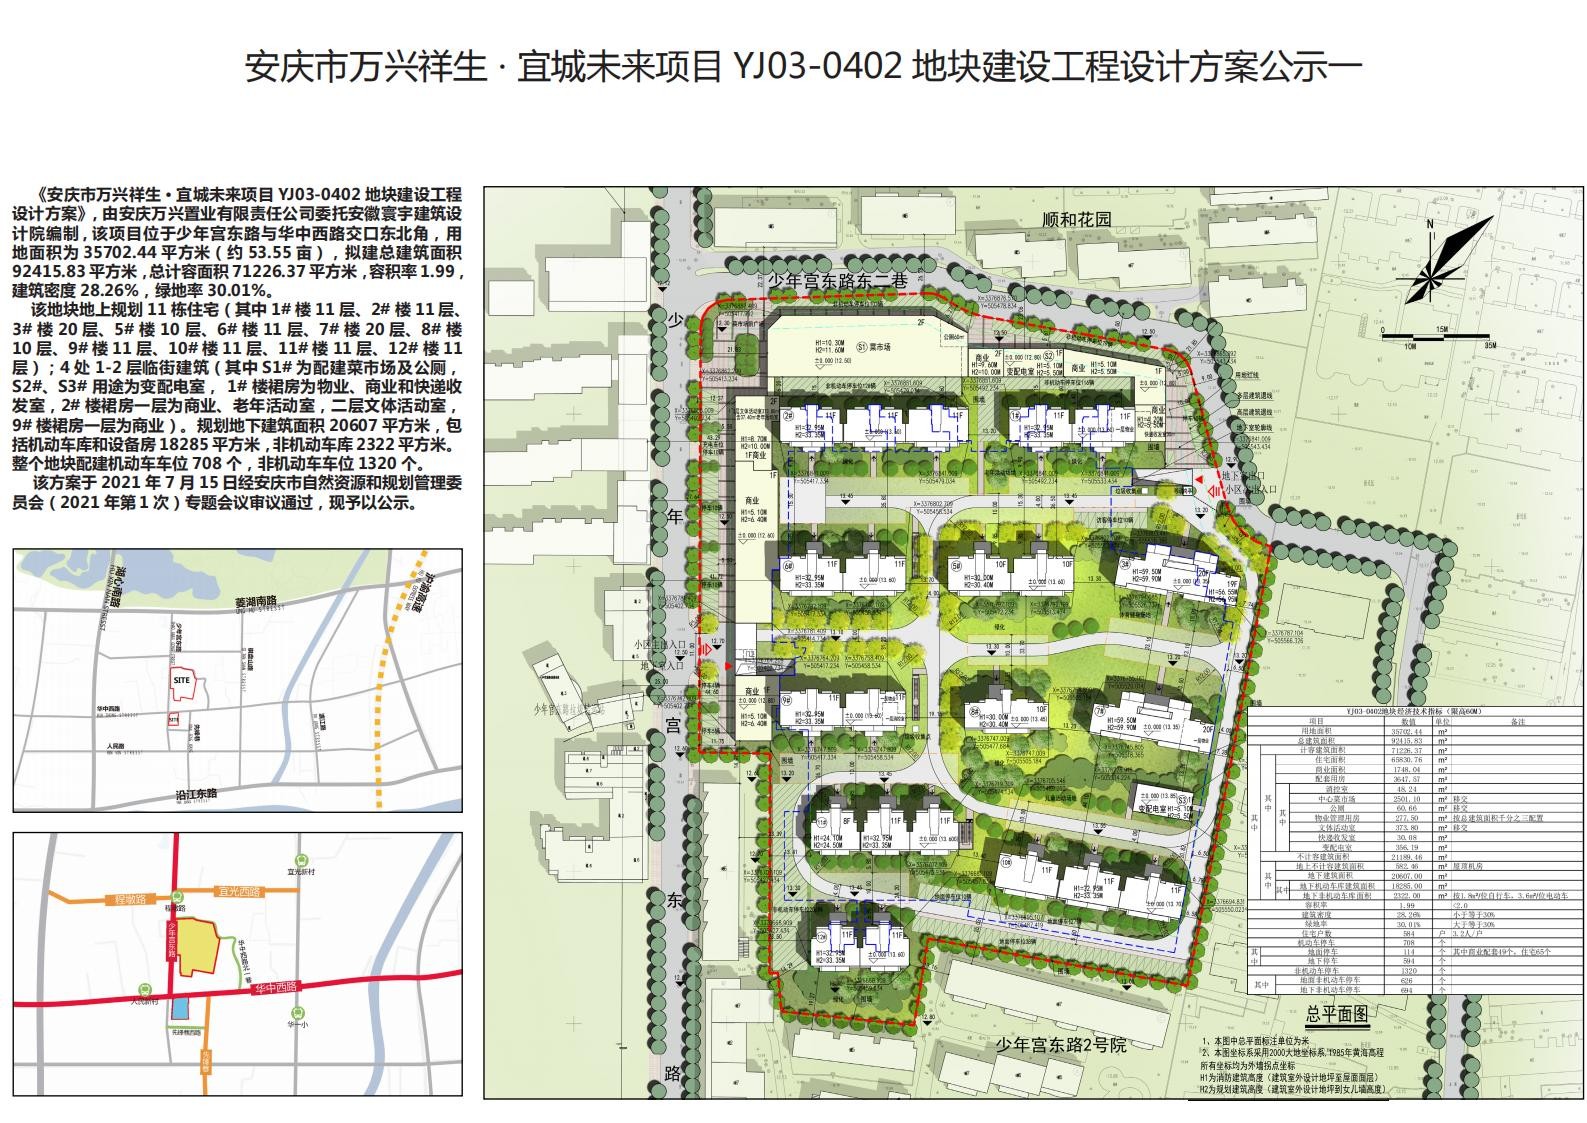 安庆市万兴祥生•宜城未来项目YJ03-0402地块 建设工程设计方案公示啦！